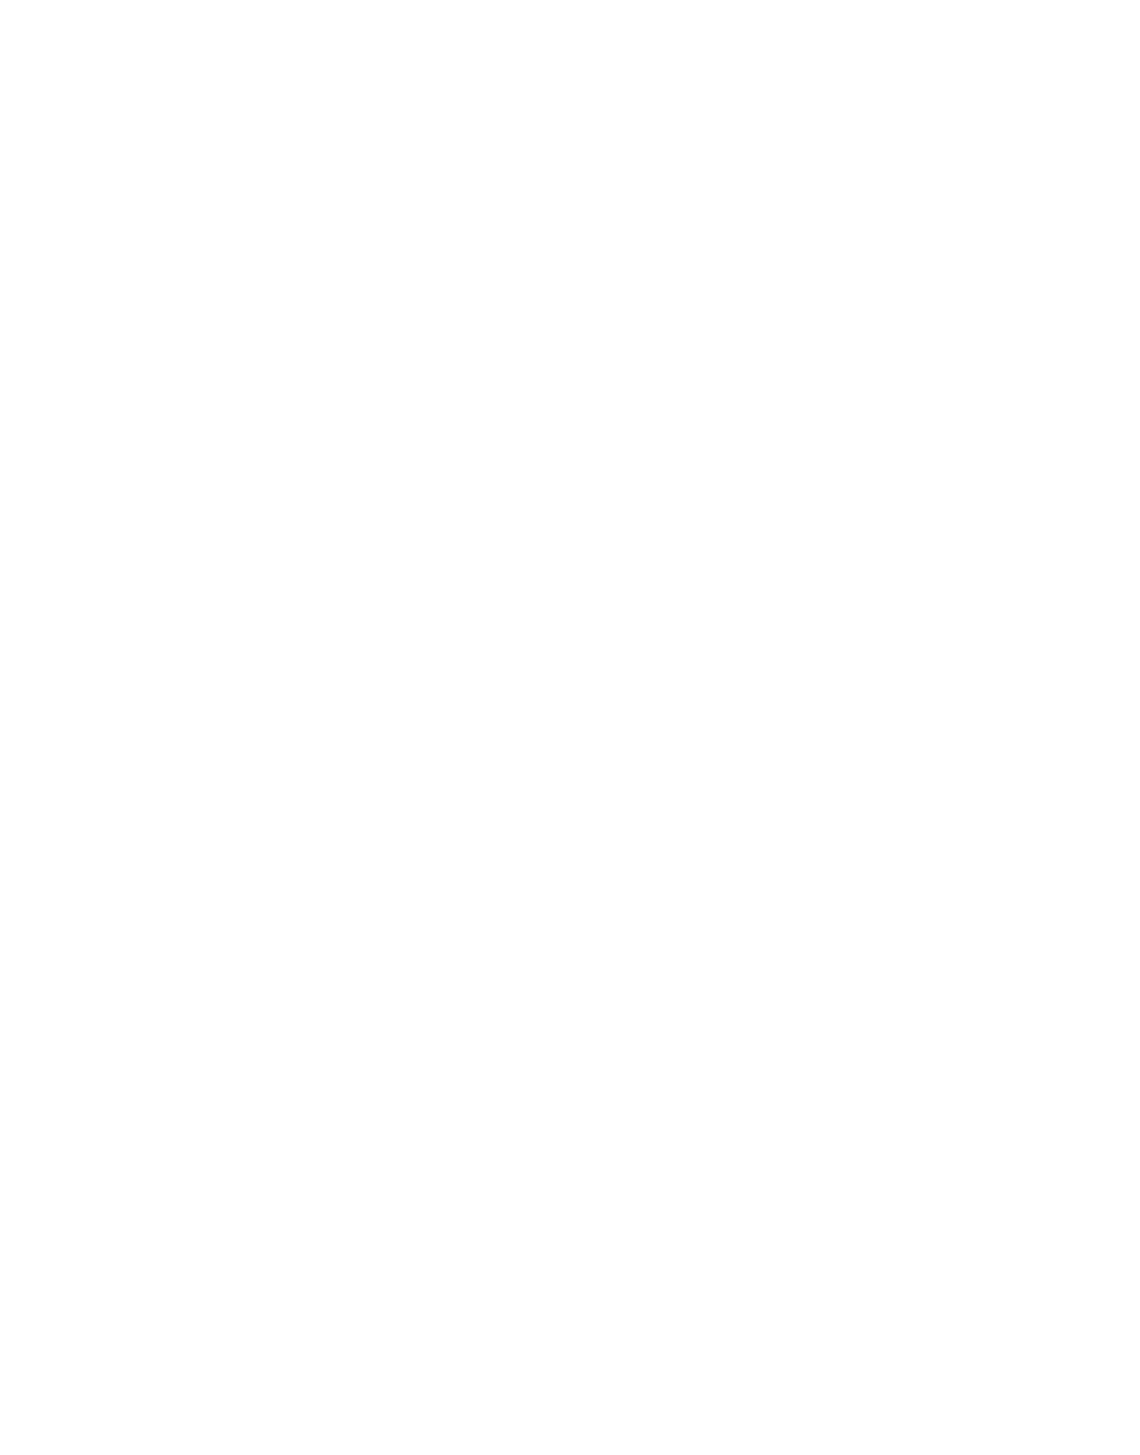 テラソルコンサルティングのプロフィール紹介。人事や組織のコンサルティングや人材紹介はテラソルへ｜テラソルコンサルティング株式会社 Terra-Sol Consulting, Inc.